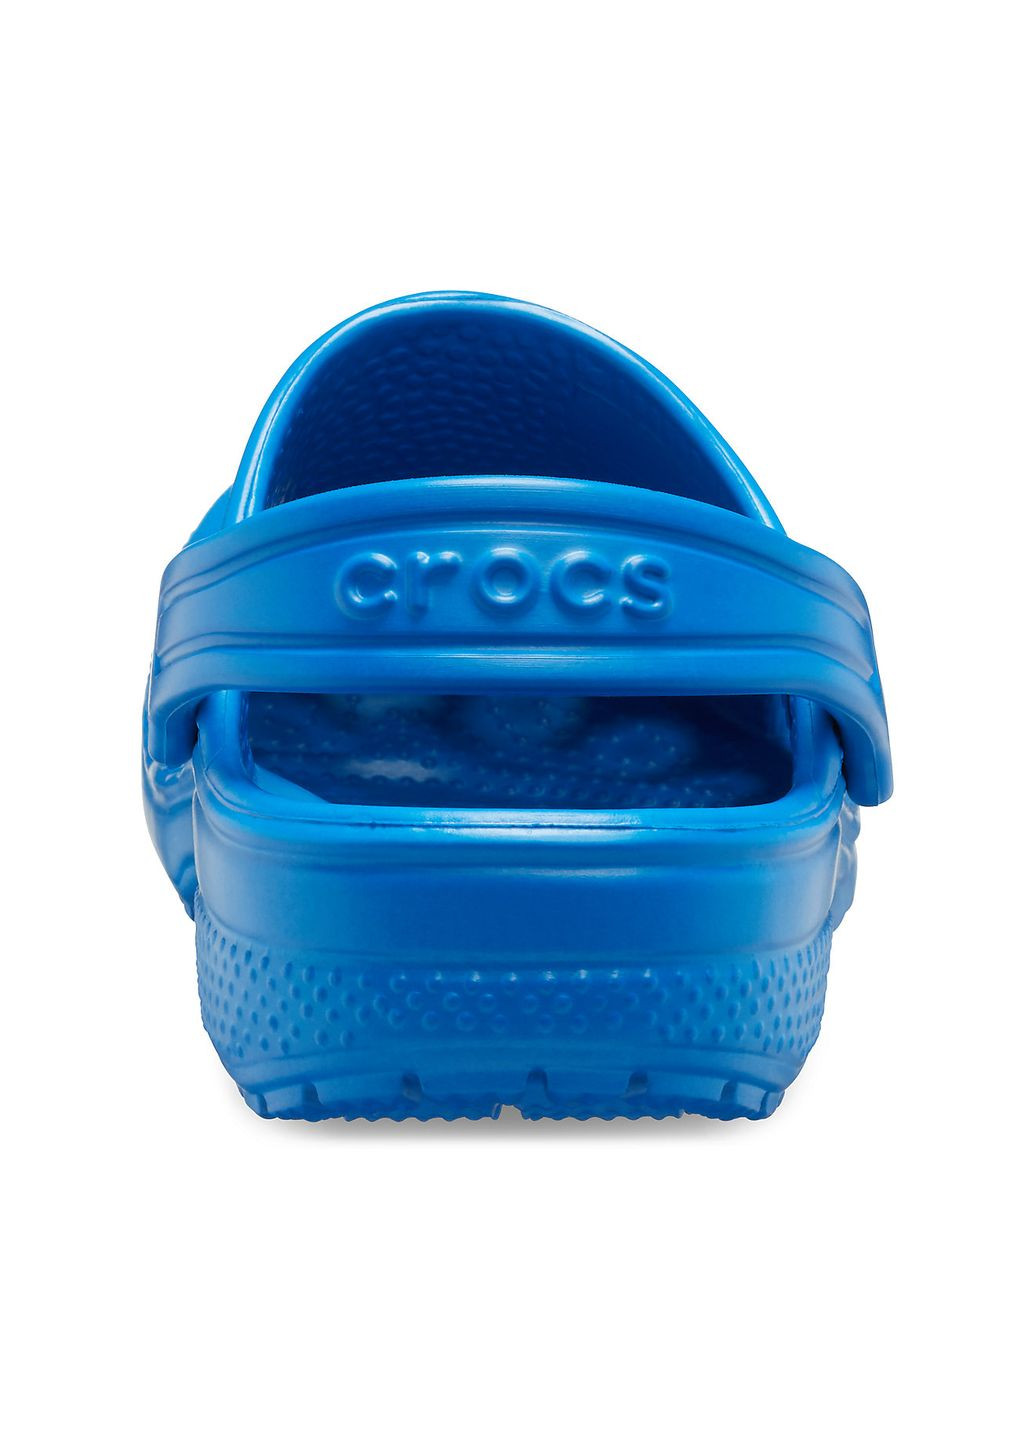 Синие сабо kids classic clog blue bolt j1\32\20.5 см 206991 Crocs